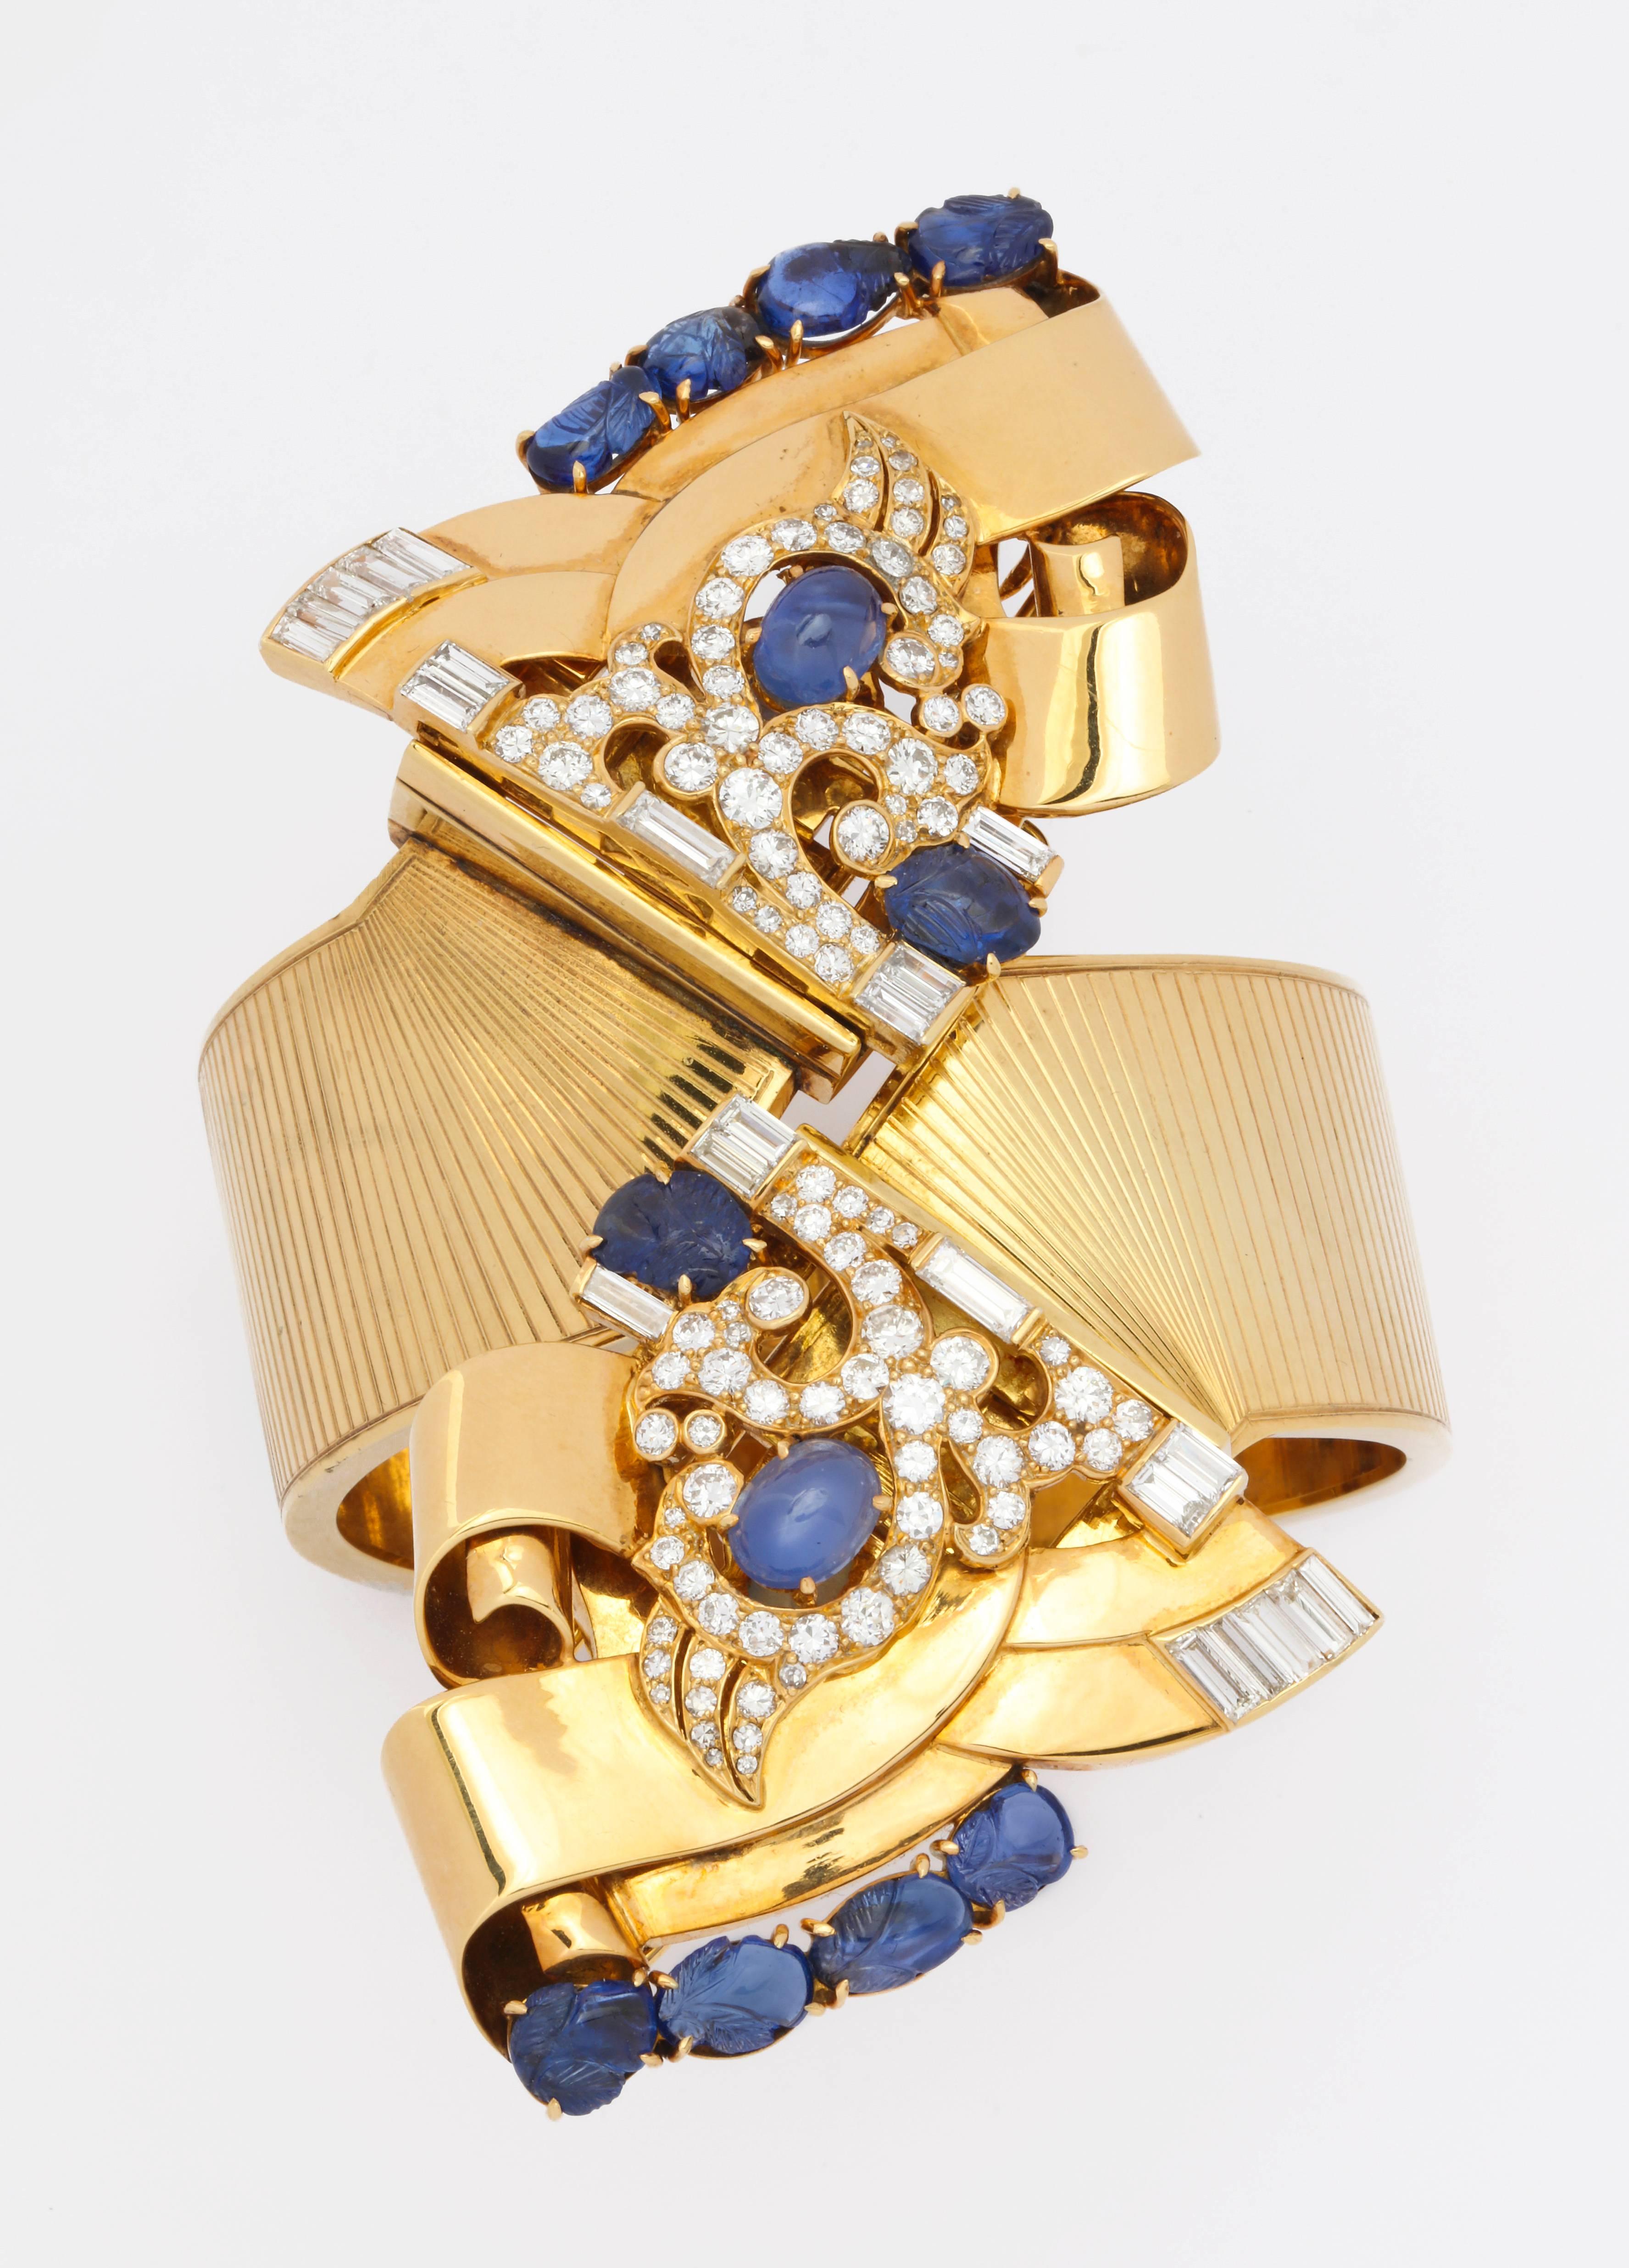 Wir bieten ein atemberaubendes, maßgeschneidertes Society-Armband im Hollywood-Stil der 1930er Jahre aus 14 Karat Gold von E.M. Battle mit abnehmbaren Kleiderspangen, besetzt mit 52 runden Diamanten von 1,65 ct und 22 Baguette-Diamanten von 2,20 ct